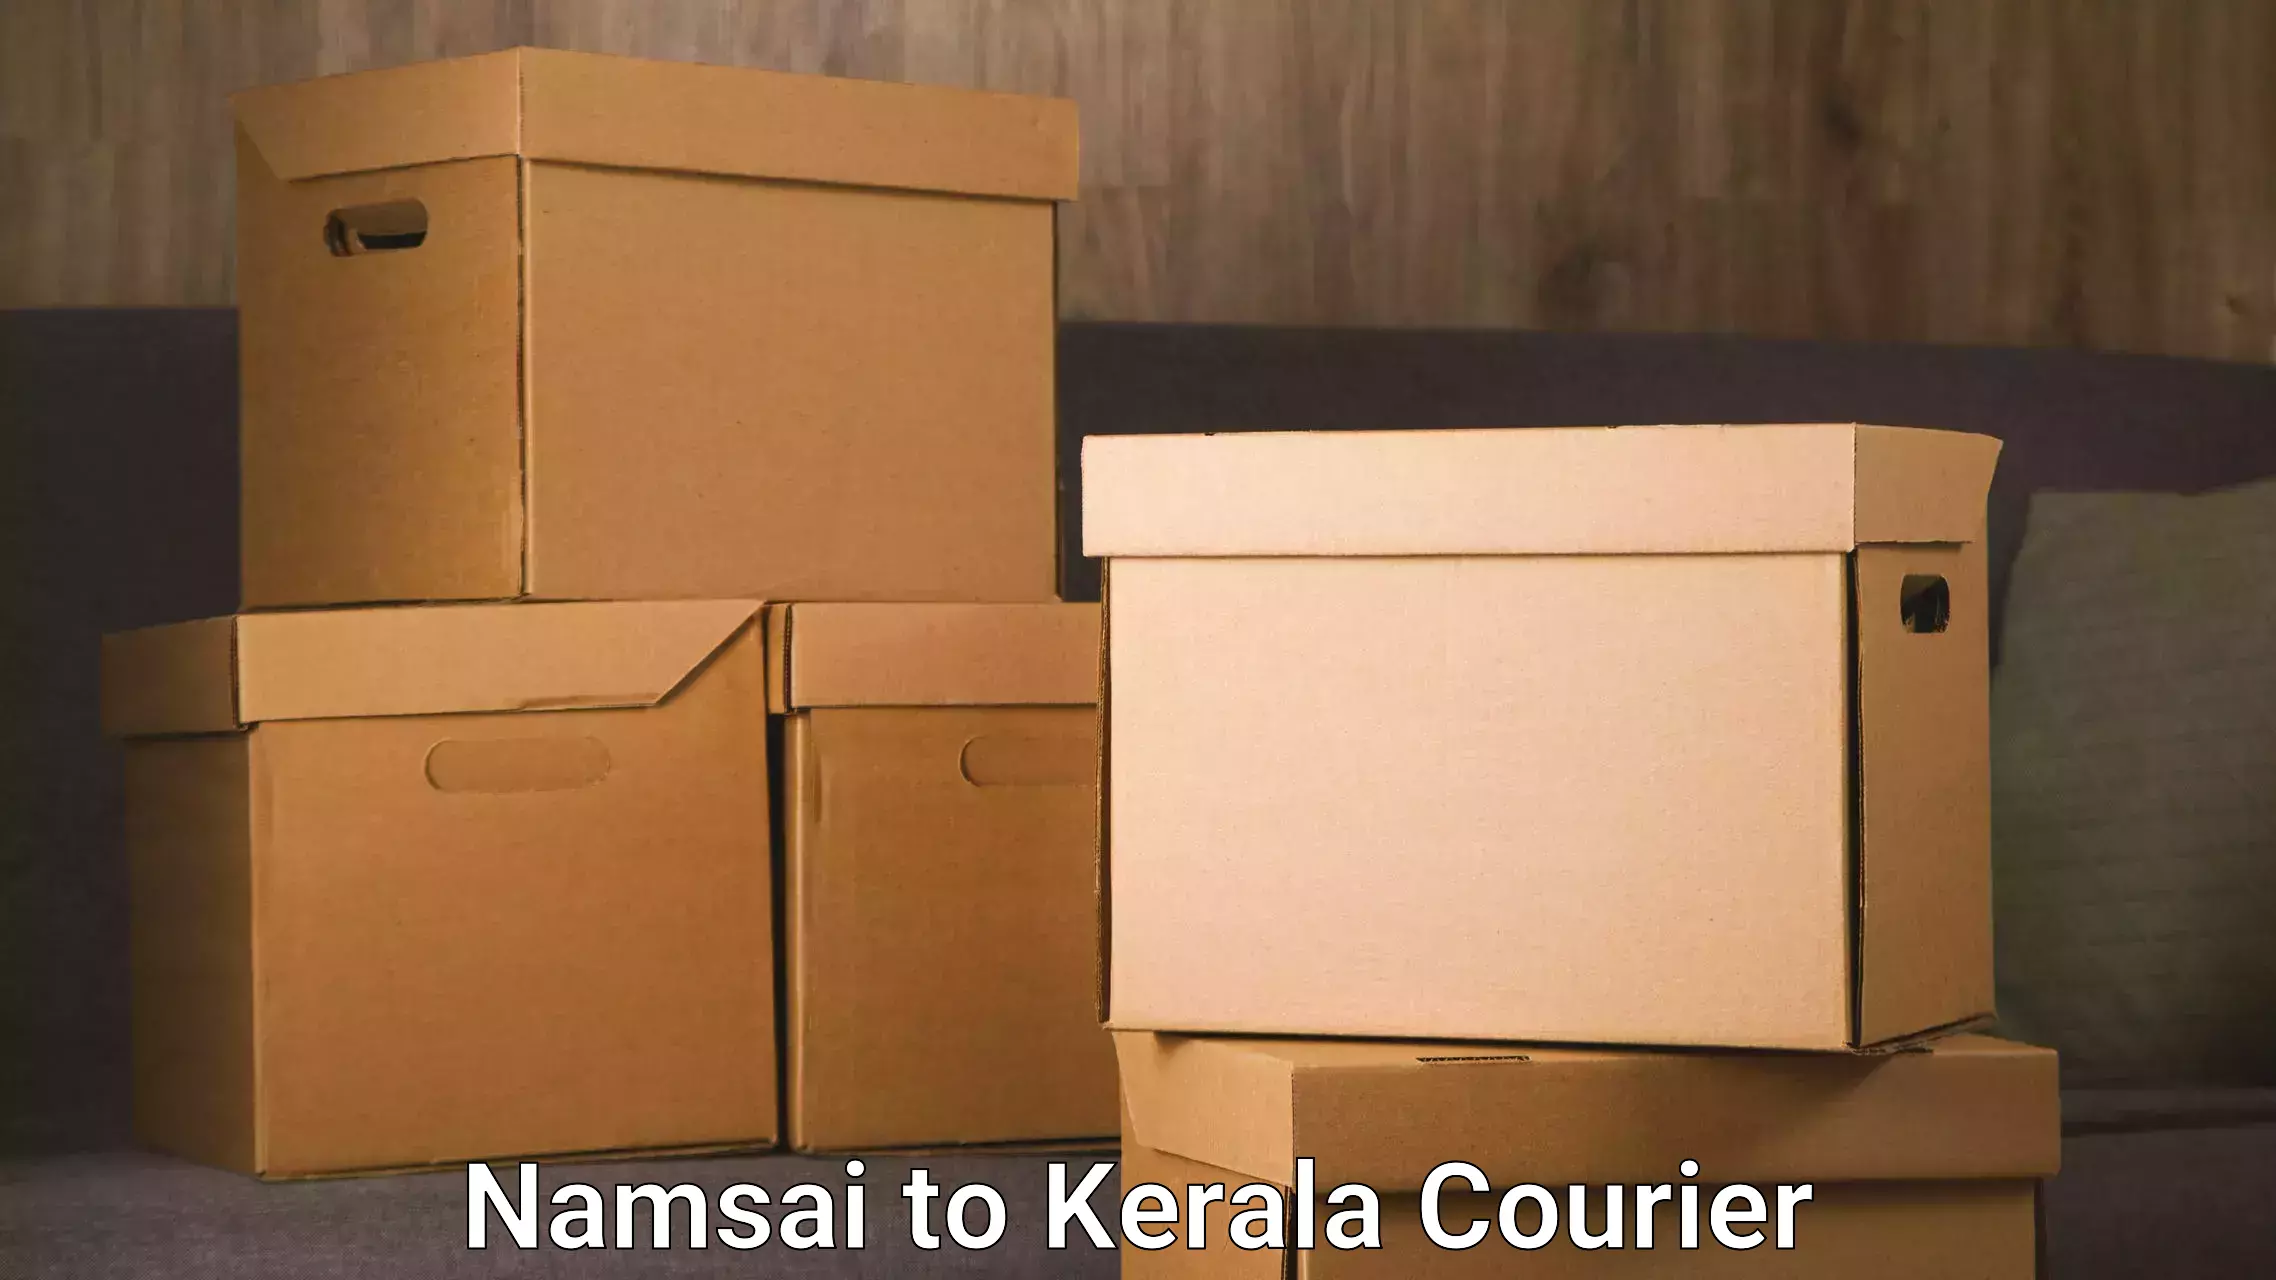 Flexible delivery schedules Namsai to Kottarakkara